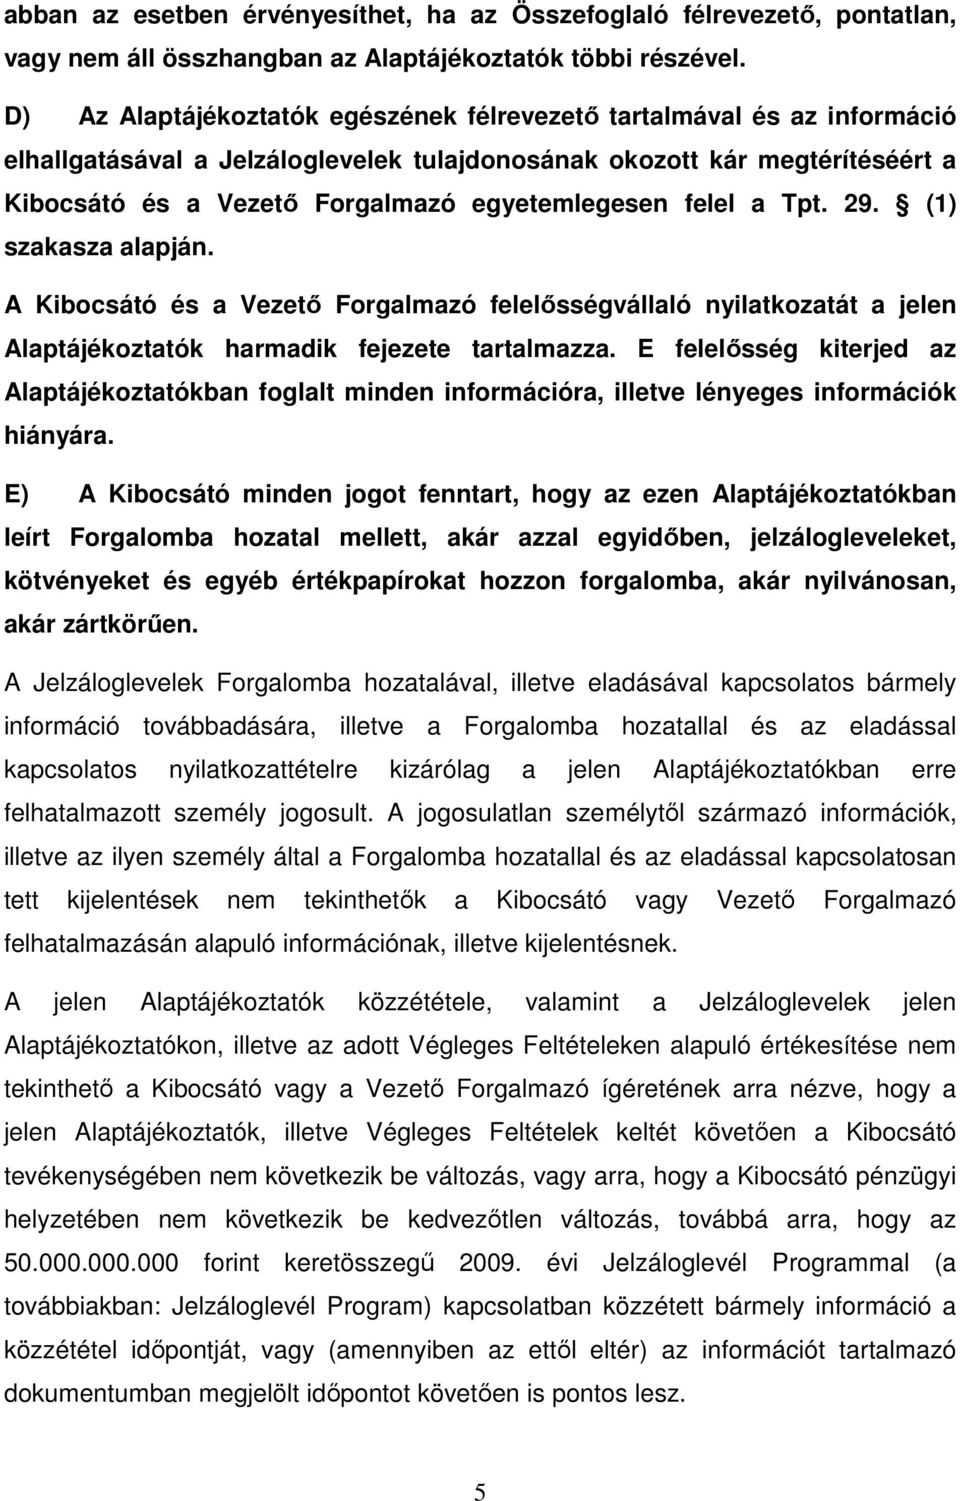 felel a Tpt. 29. (1) szakasza alapján. A Kibocsátó és a Vezetı Forgalmazó felelısségvállaló nyilatkozatát a jelen Alaptájékoztatók harmadik fejezete tartalmazza.